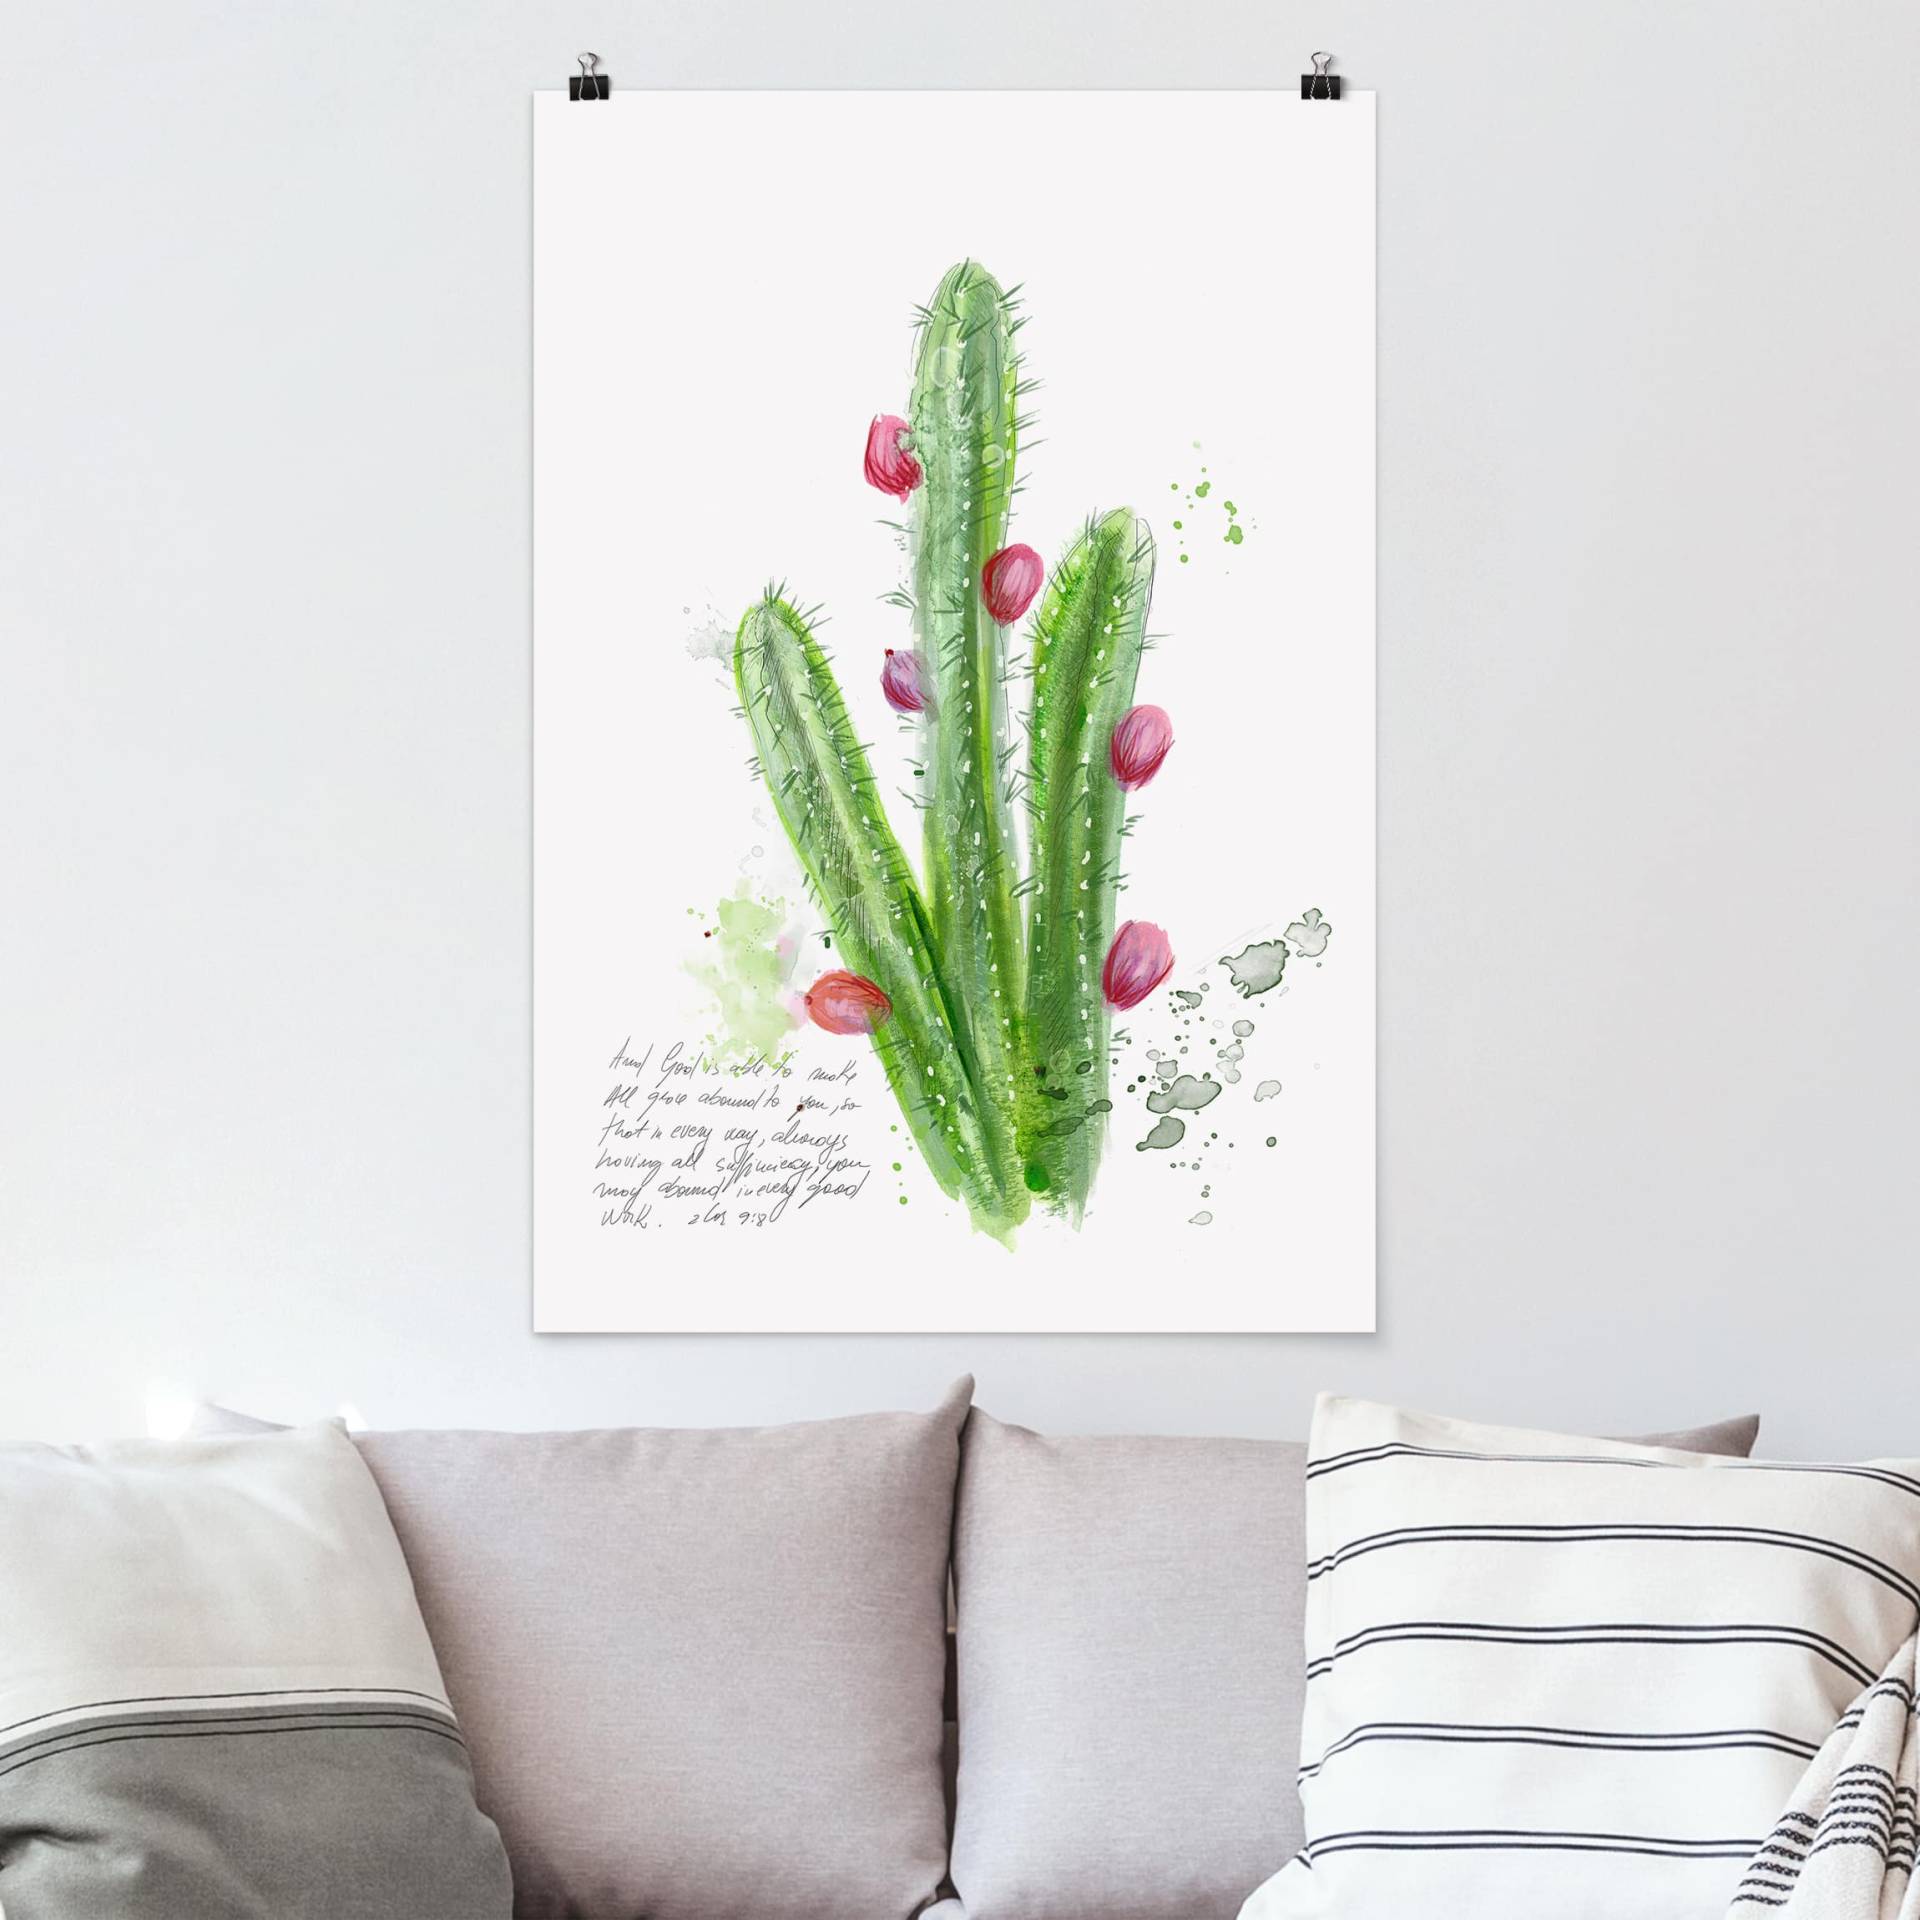 Poster Blumen Kaktus mit Bibelvers II von Klebefieber